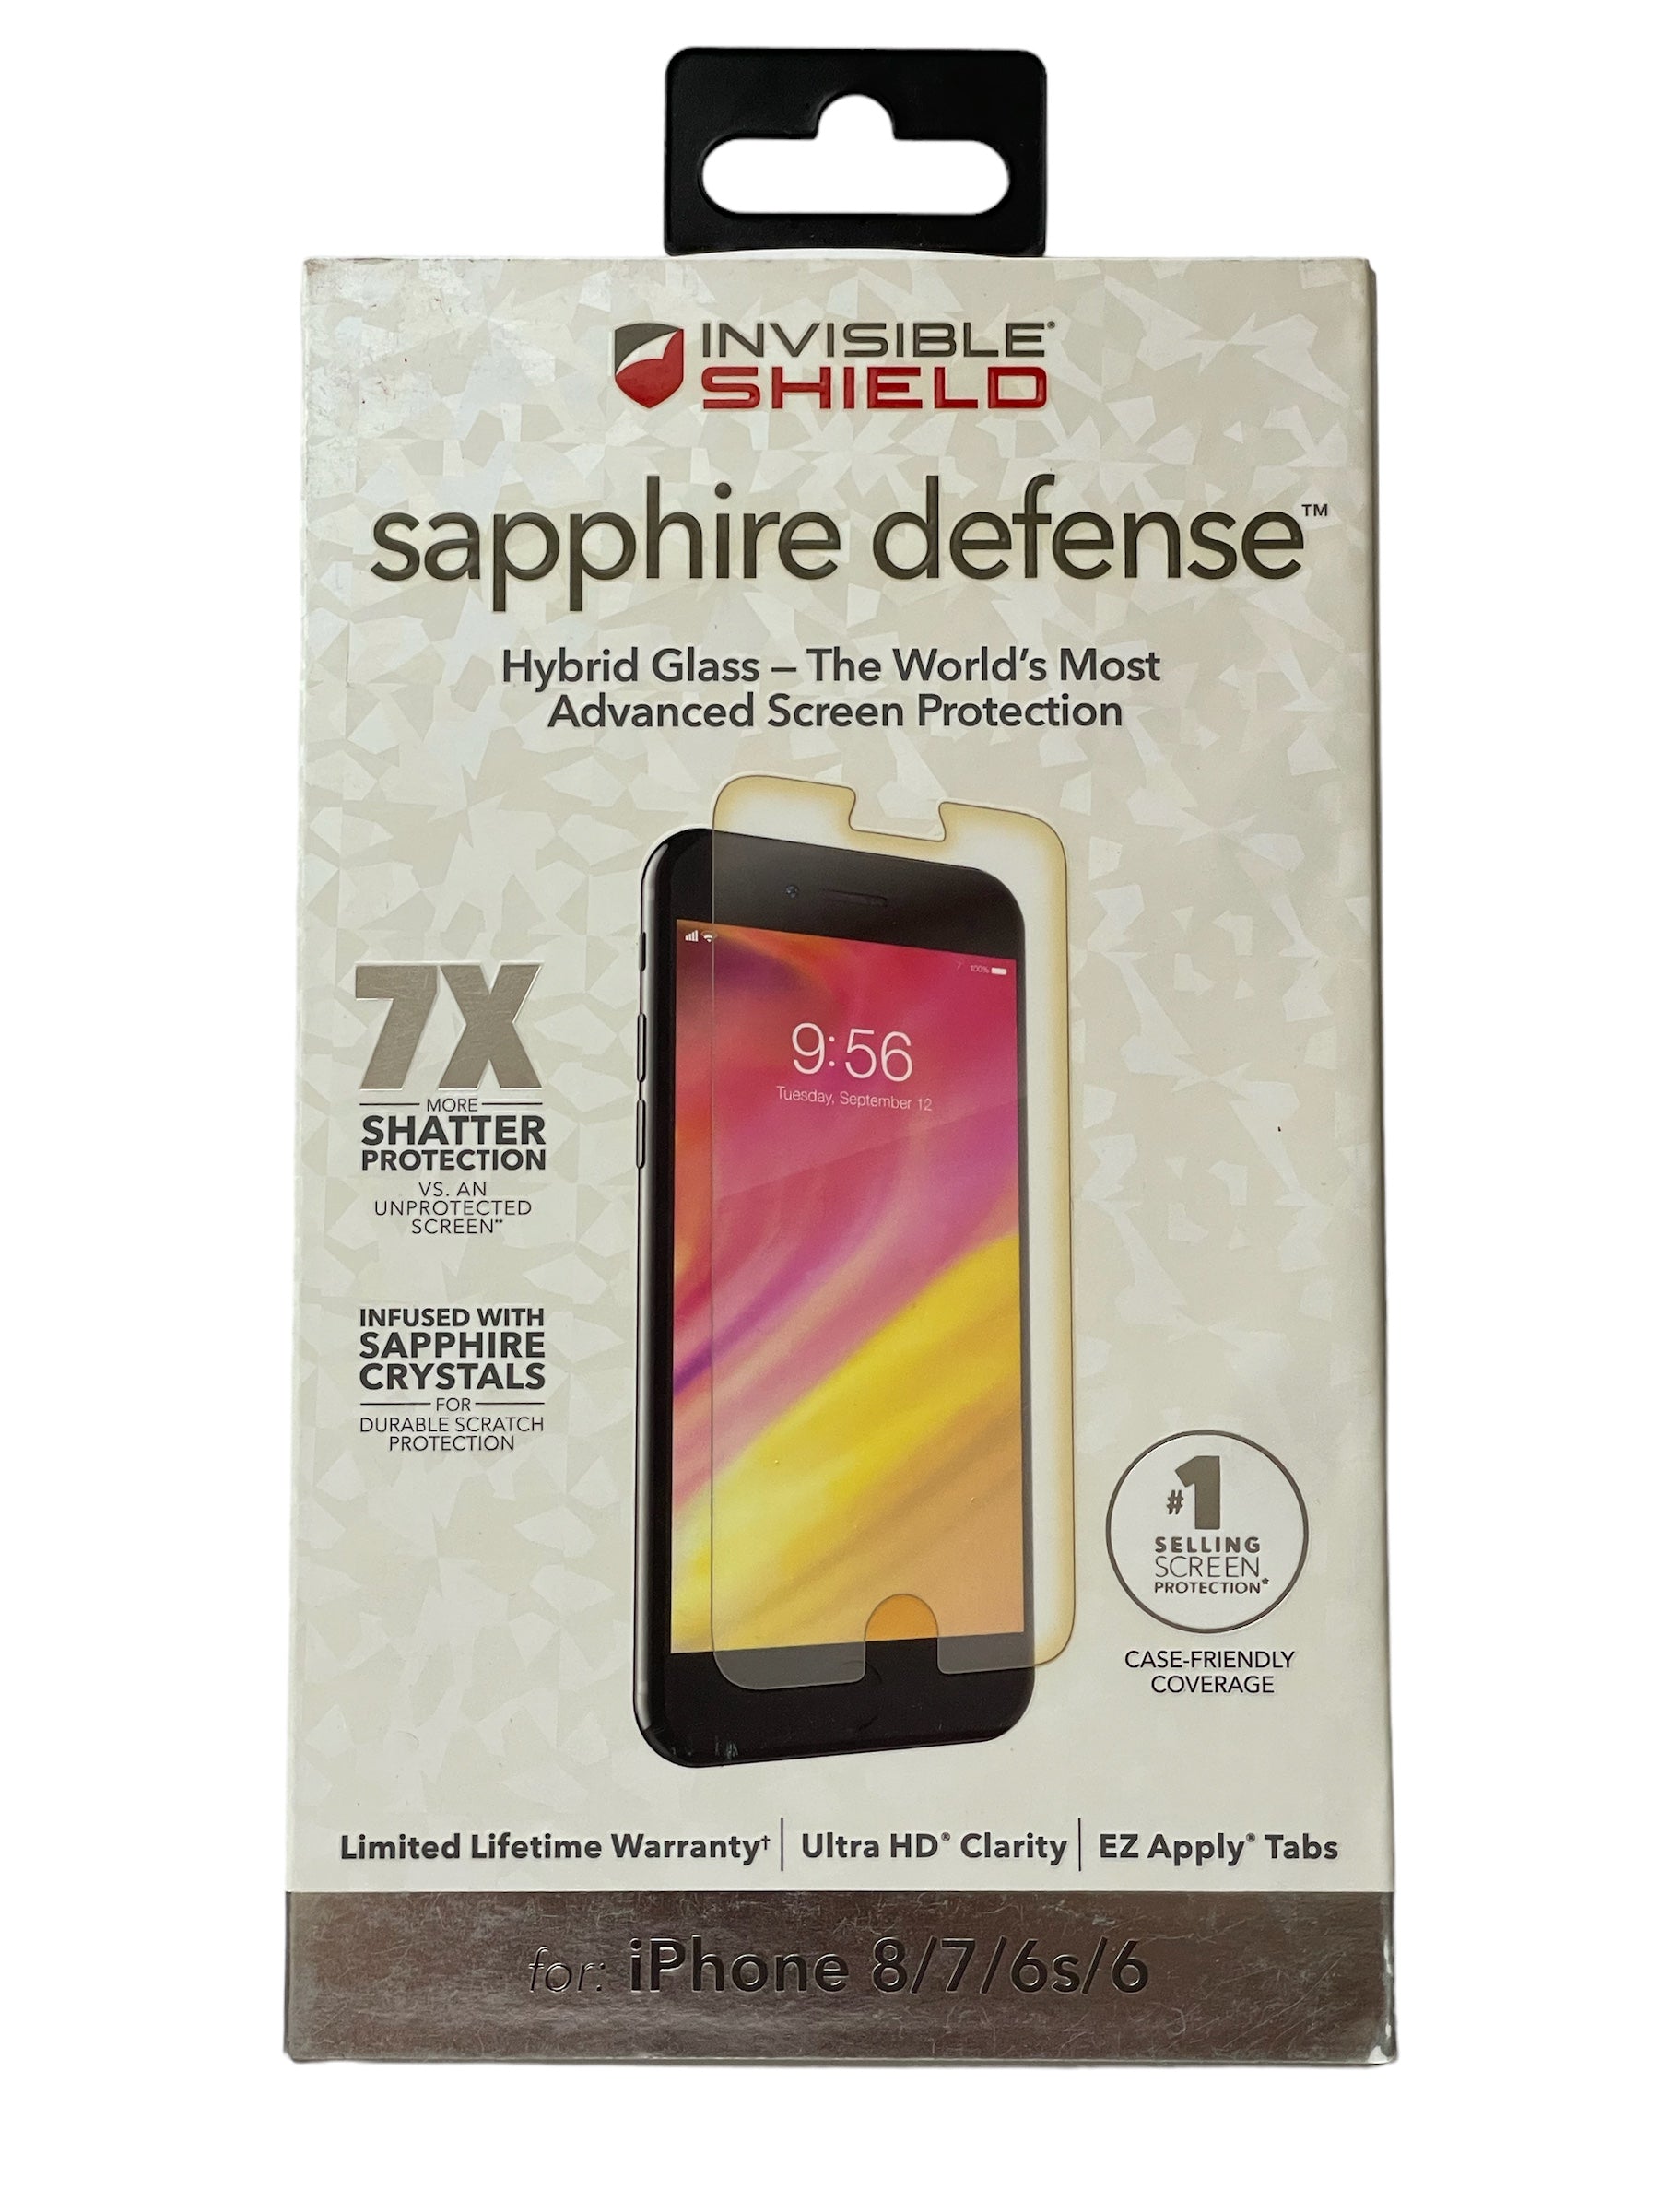 ZAGG Invisible Shield Sapphire Defense Glass Screen Protector iPhone 8/7/6s/6 - Selzalot